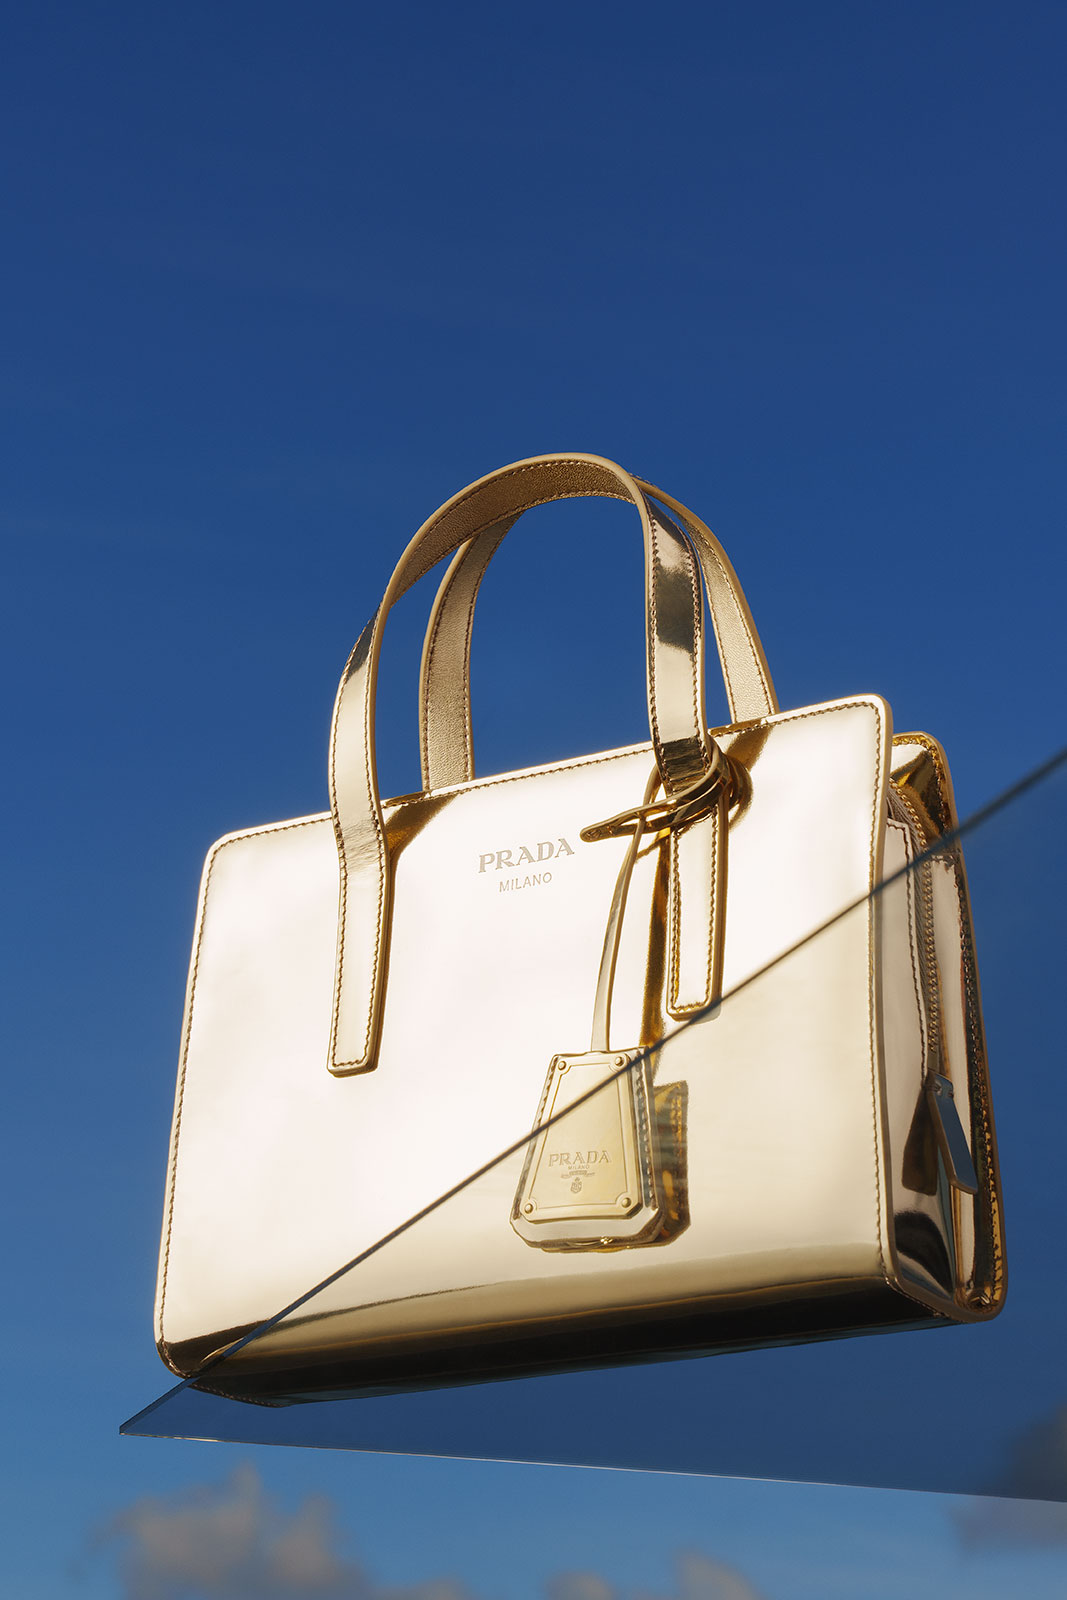 PRADA Platinum Galleria Saffiano Leather Mini Bag - Gold for Women